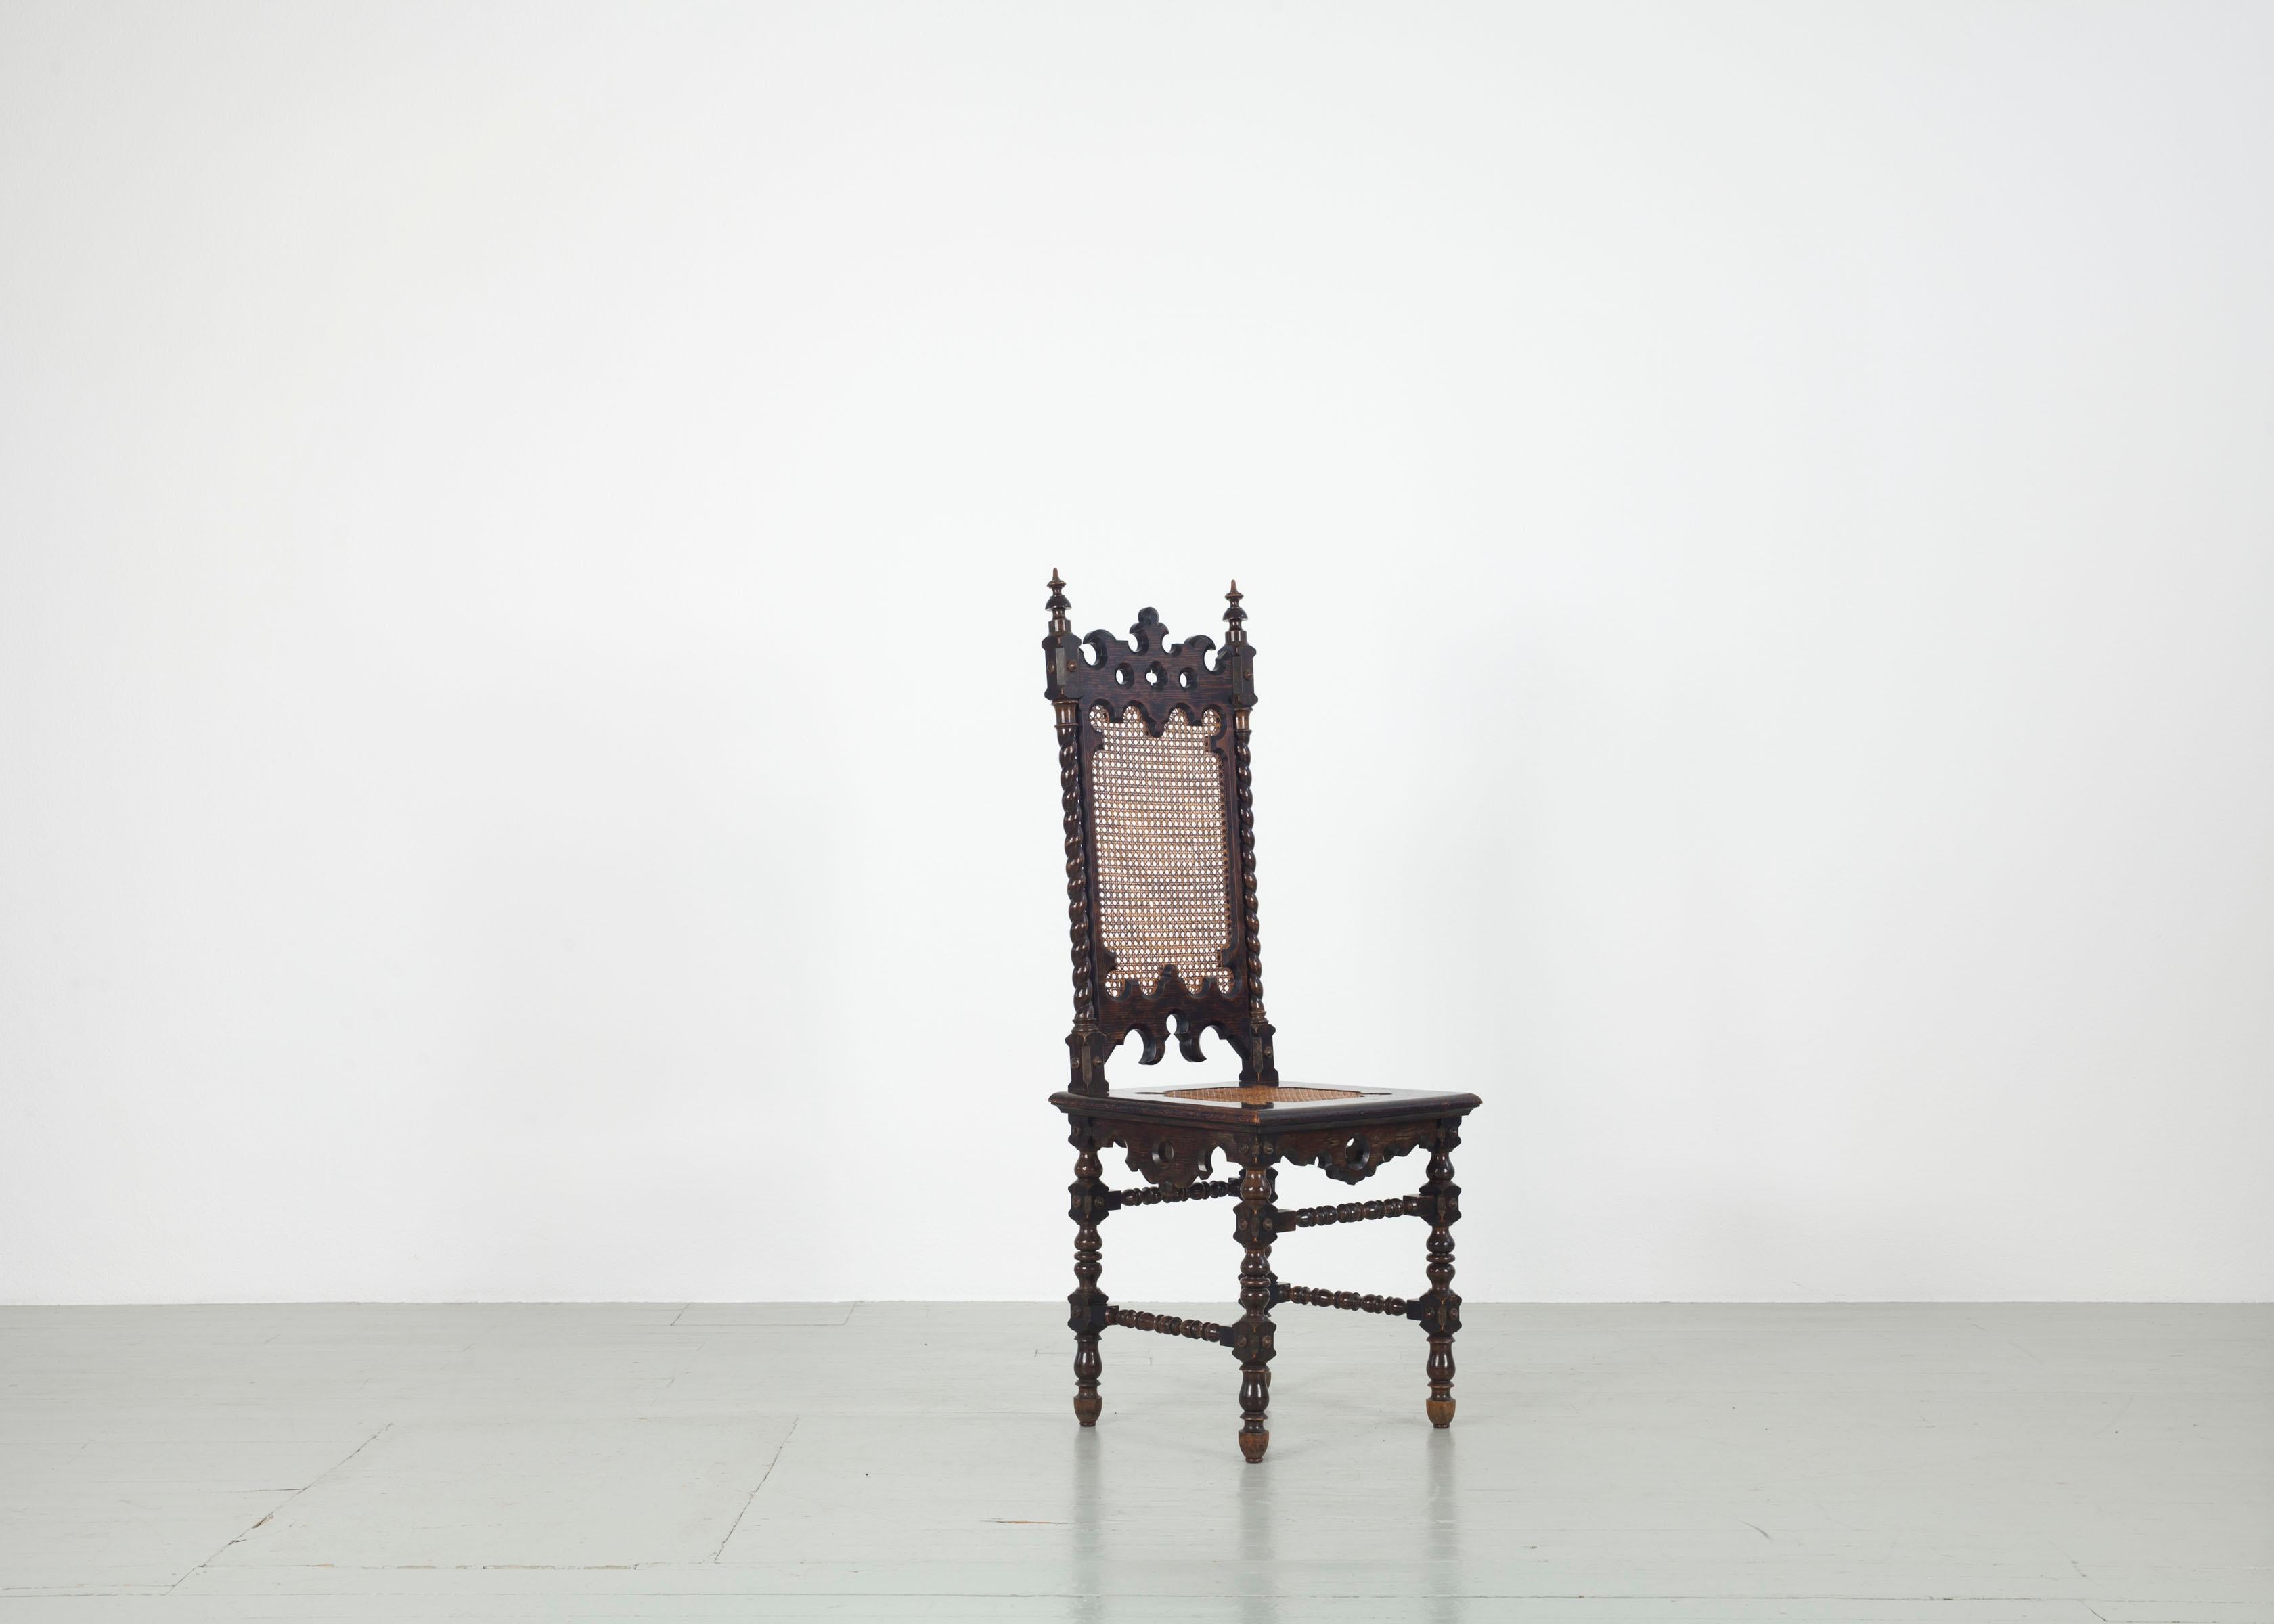 Dieses Set aus sechs neugotischen Stühlen wurde in den 1890er Jahren hergestellt. Der dunkel gebeizte Eichenholzrahmen ist kunstvoll geformt und weist typische neugotische Merkmale auf. Die verschiedenen Ornamente und dekorativen Elemente machen